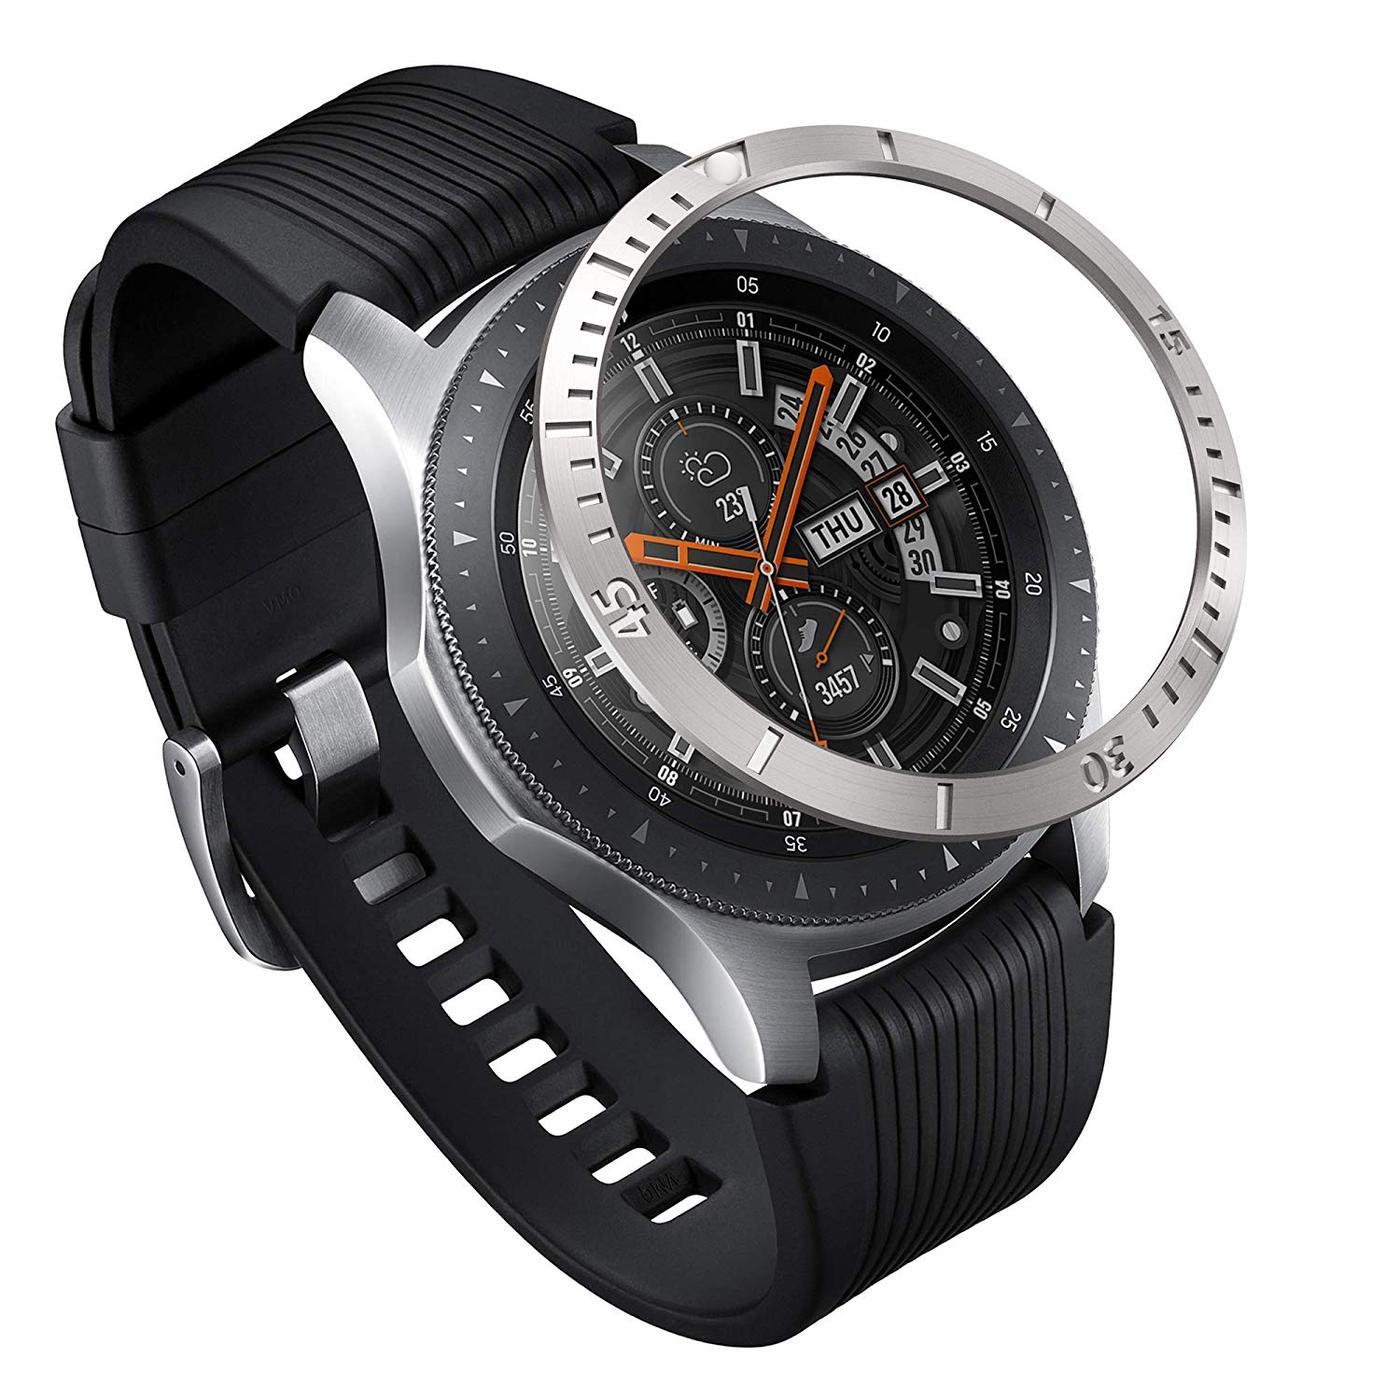 Samsung Galaxy Watch 46mm/Gear S3 Bezel Styling Silver